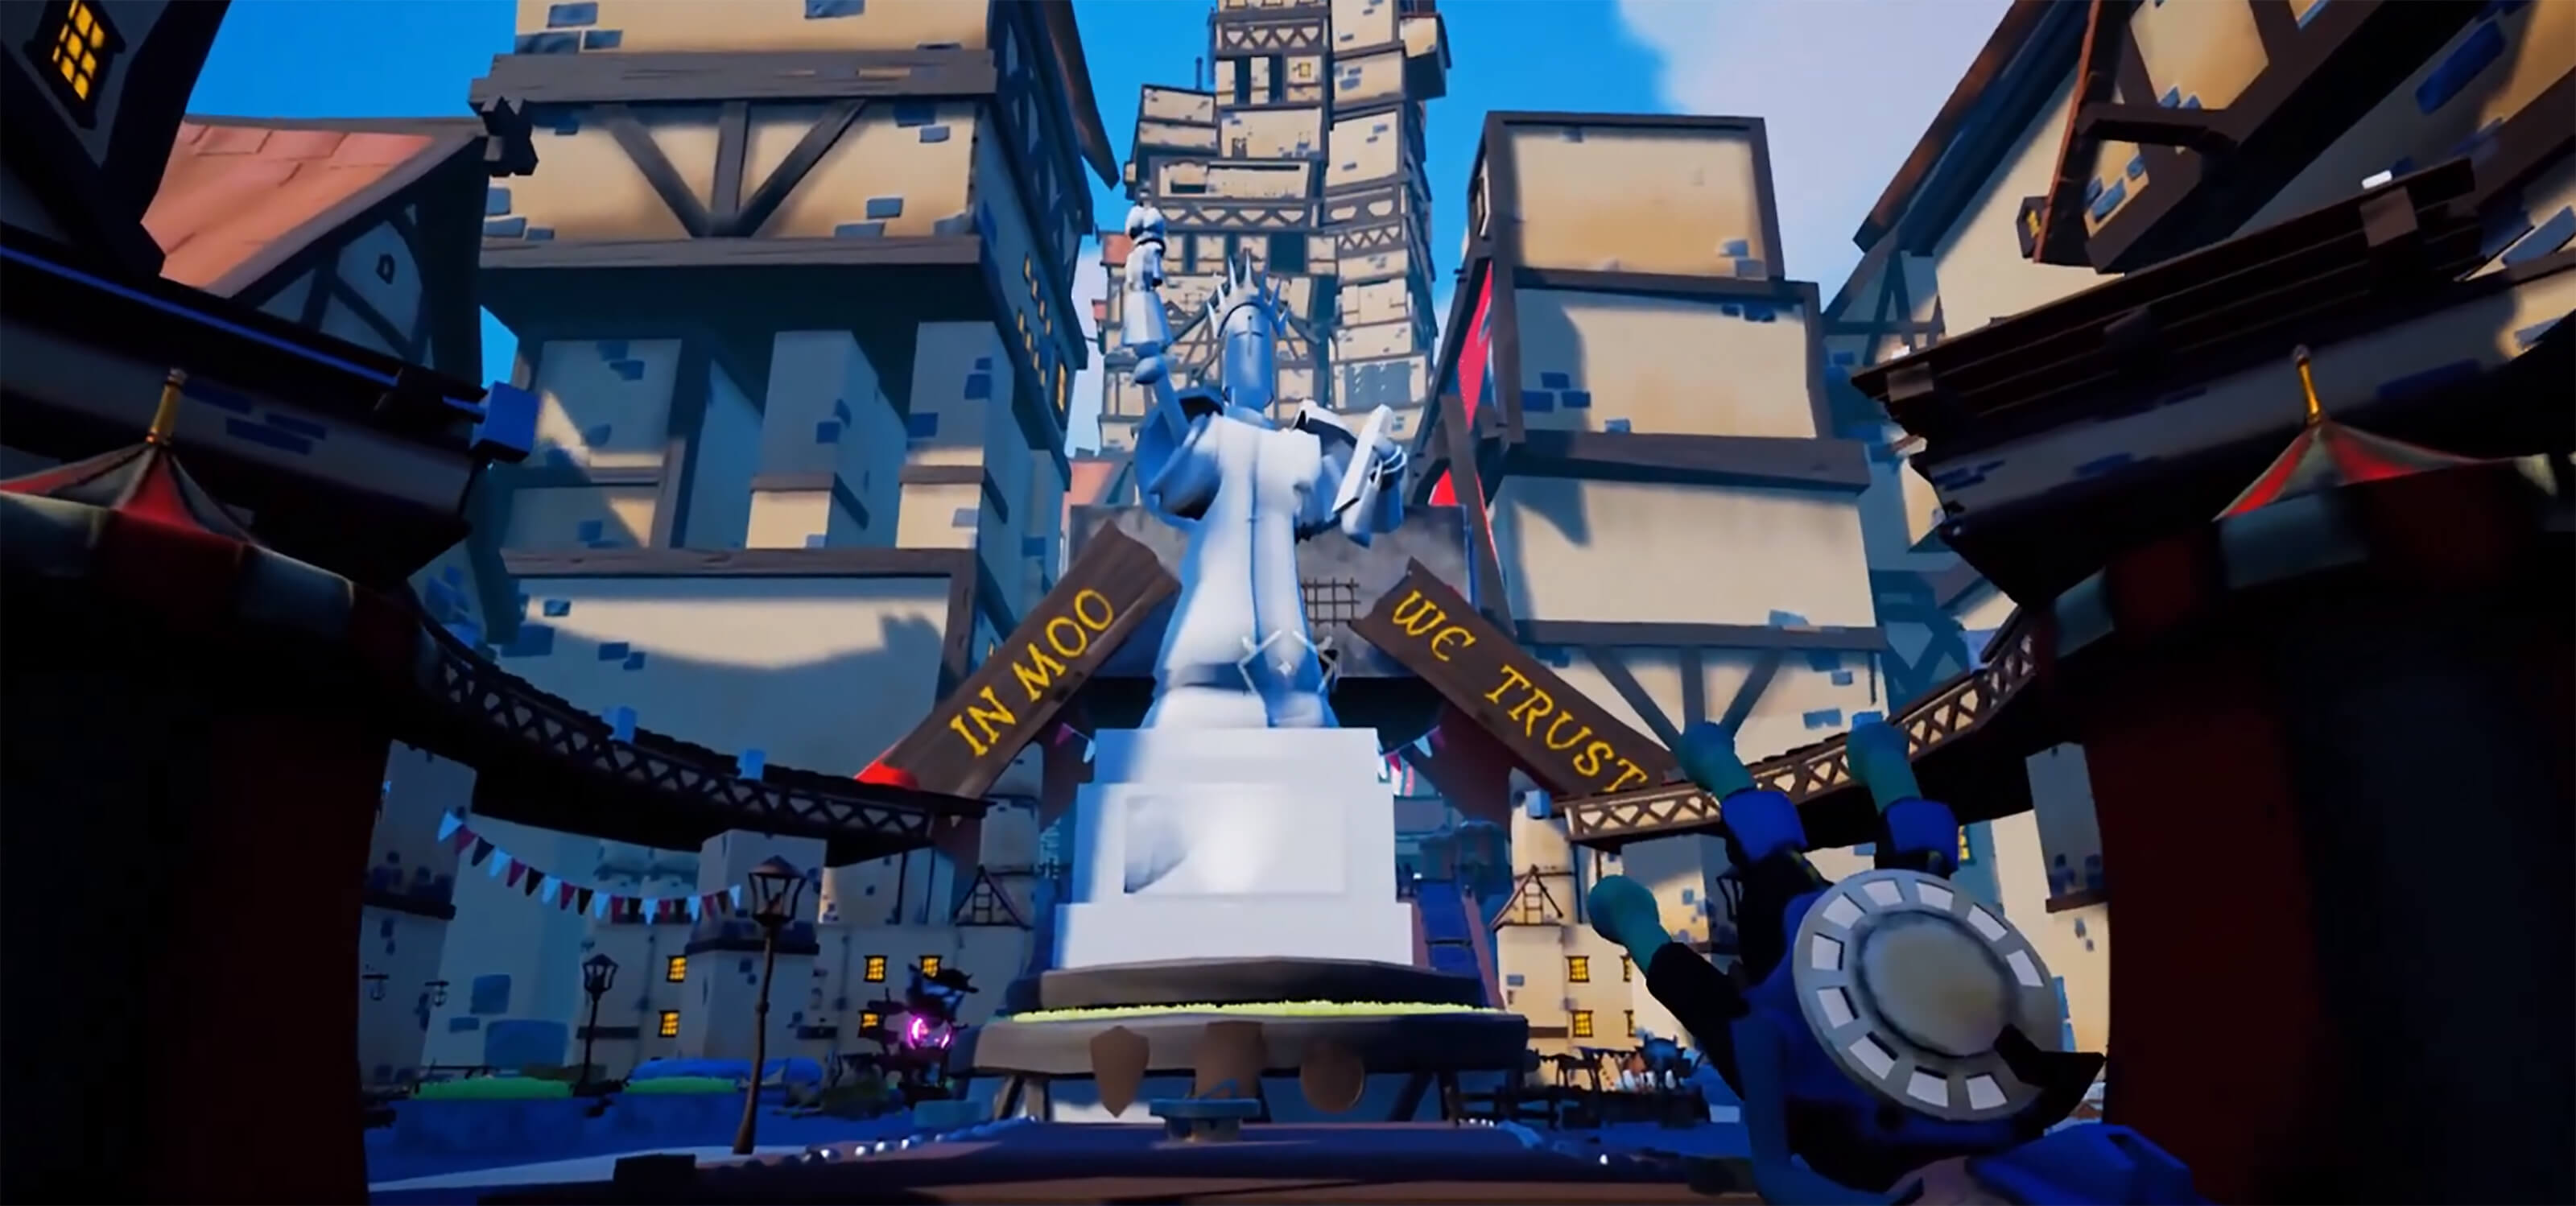 Captura de pantalla del videojuego: una gran estatua de mármol se encuentra en la plaza de una ciudad medieval. Un letrero dice: "En Moo confiamos".